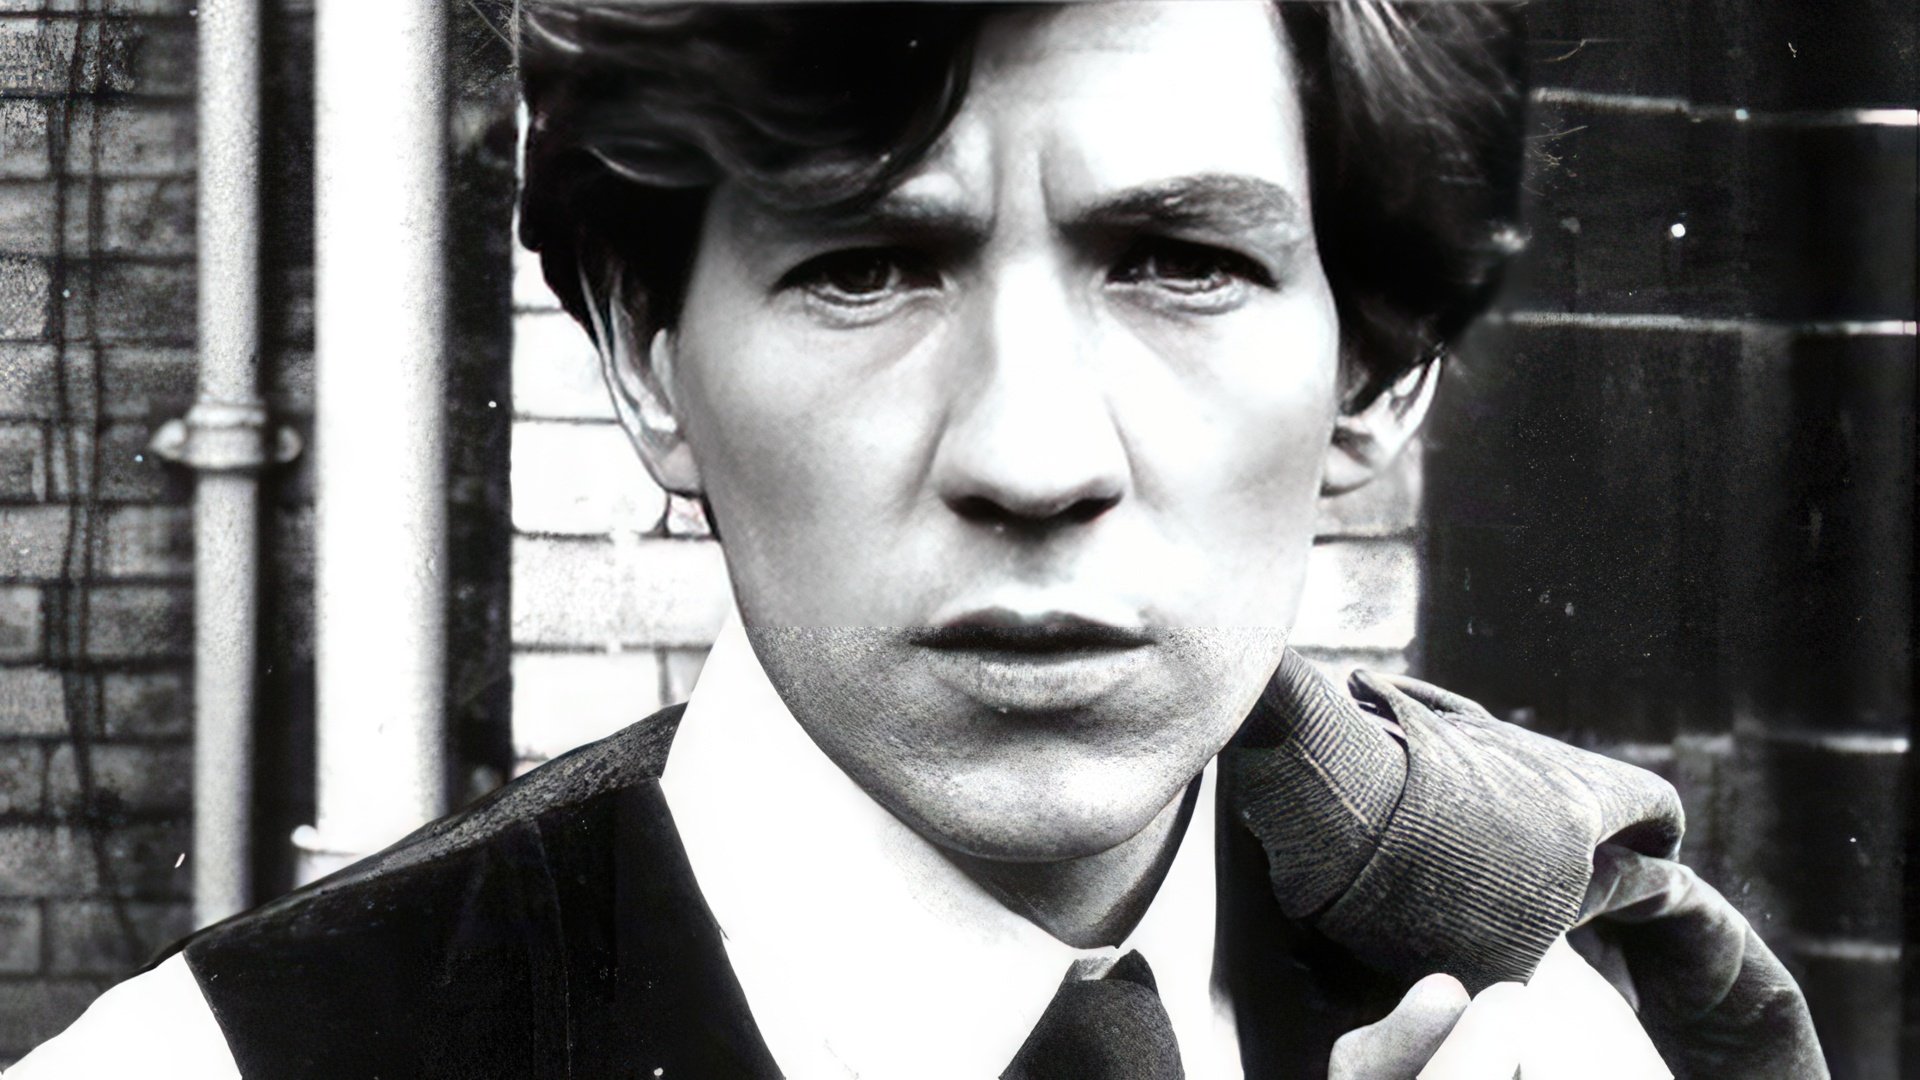 Ian McKellen in his youth